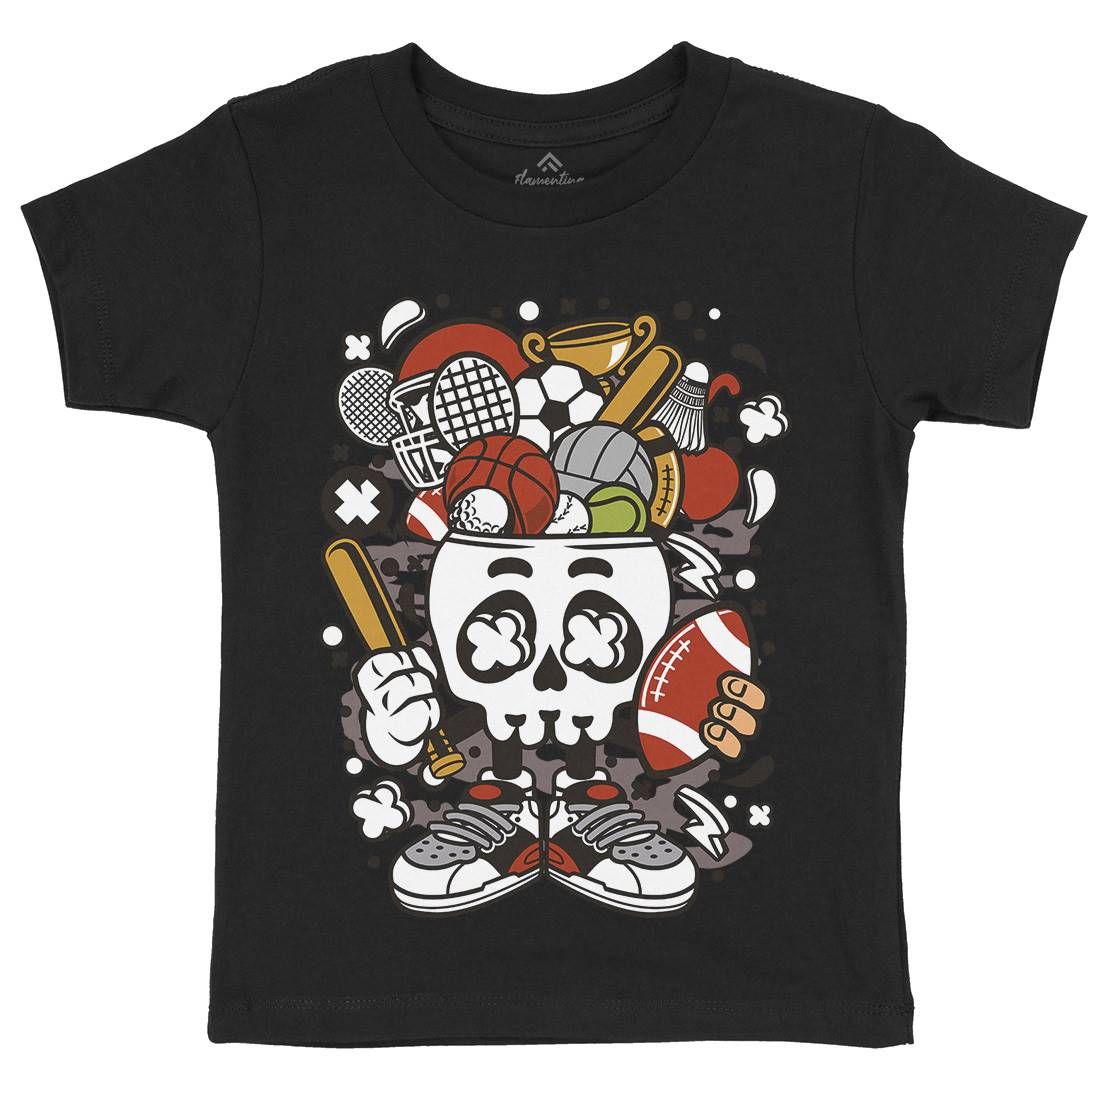 Sports Skull Head Kids Organic Crew Neck T-Shirt Sport C666